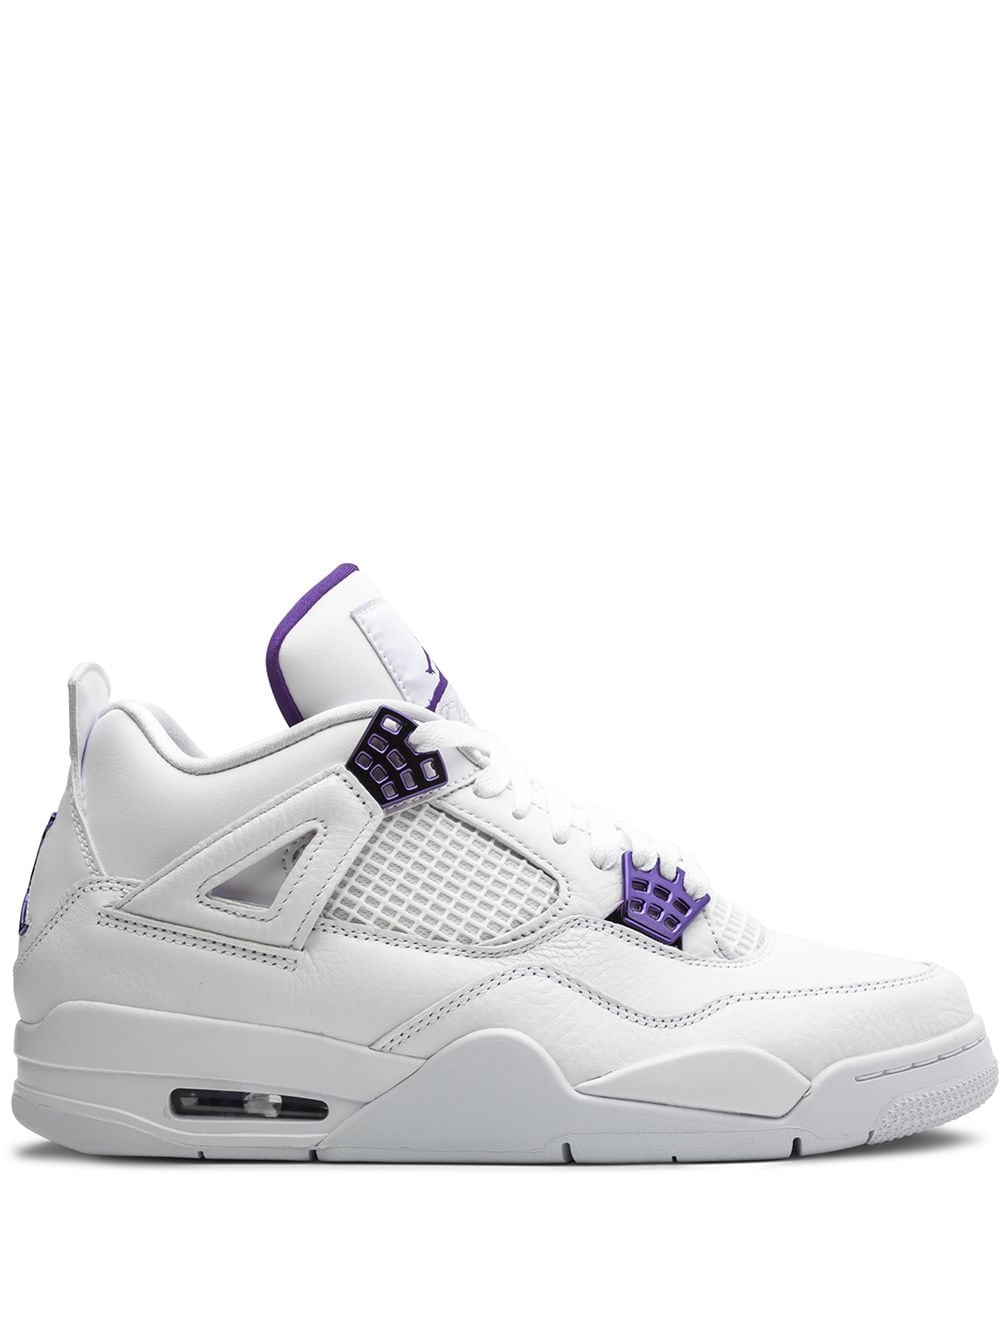 Jordan Air Jordan 4 Retro "Metallic Pack - Purple" sneakers - White